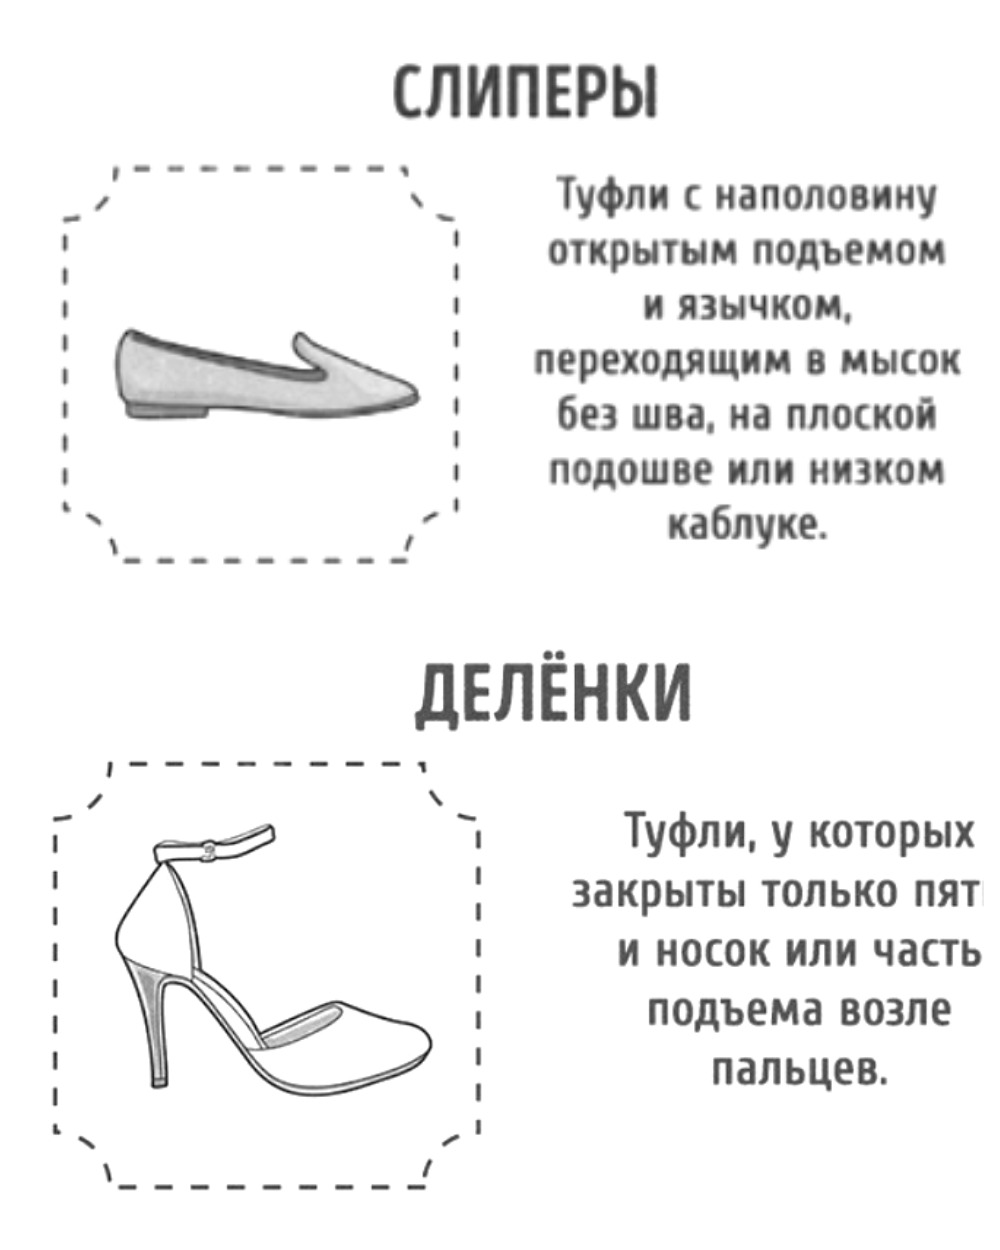 Название ботинок женских